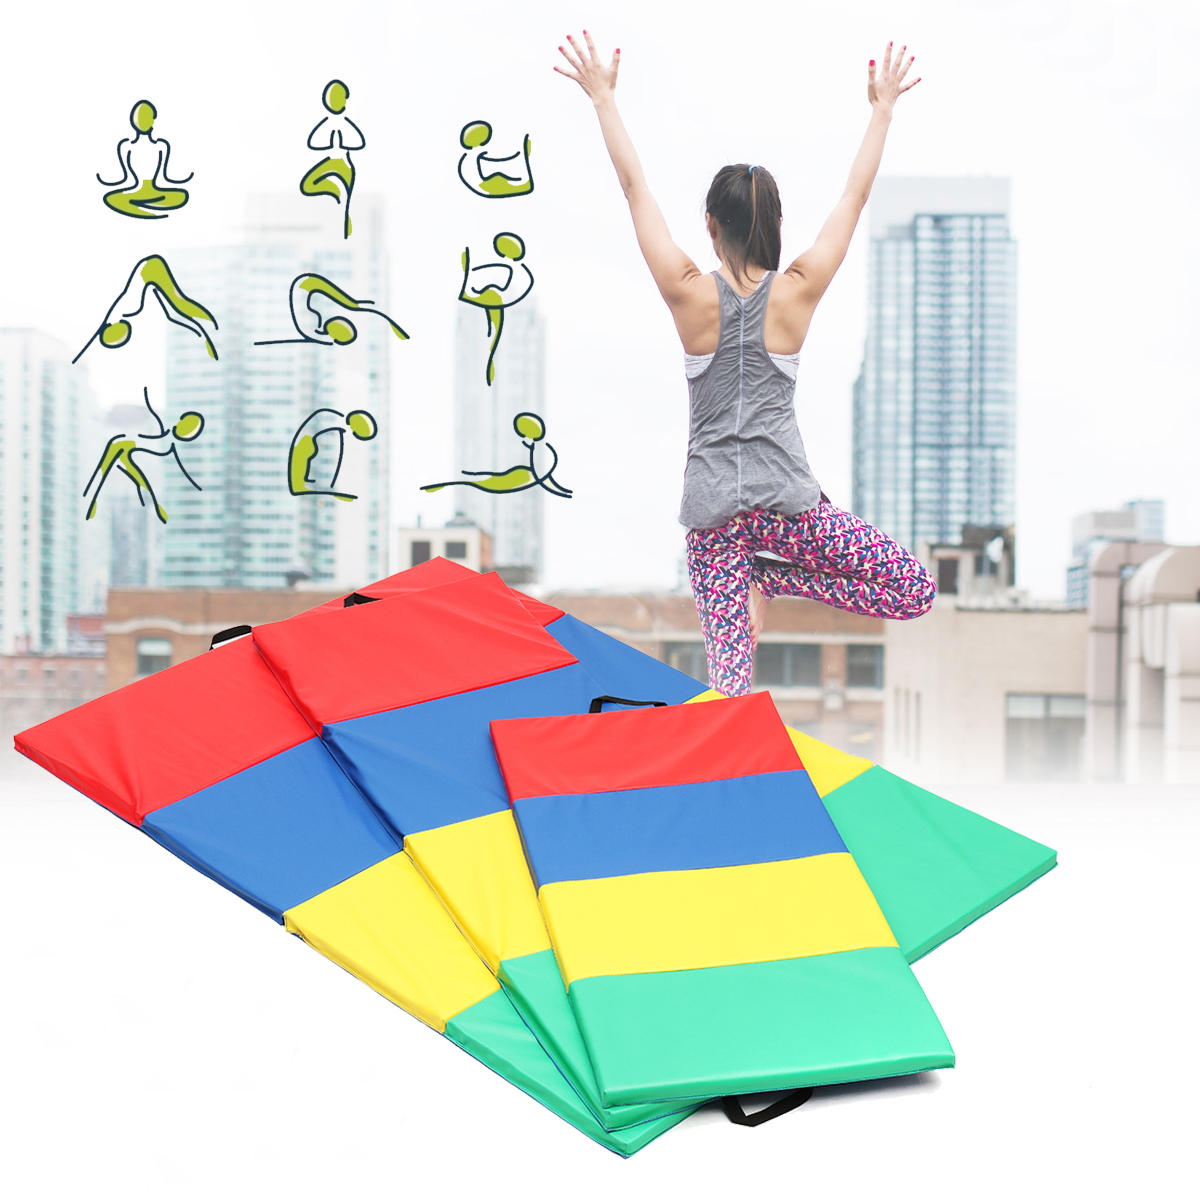 4 tapetes de ginástica dobráveis para yoga, exercícios, painéis de pista de ar para tumbling, escalada e pilates